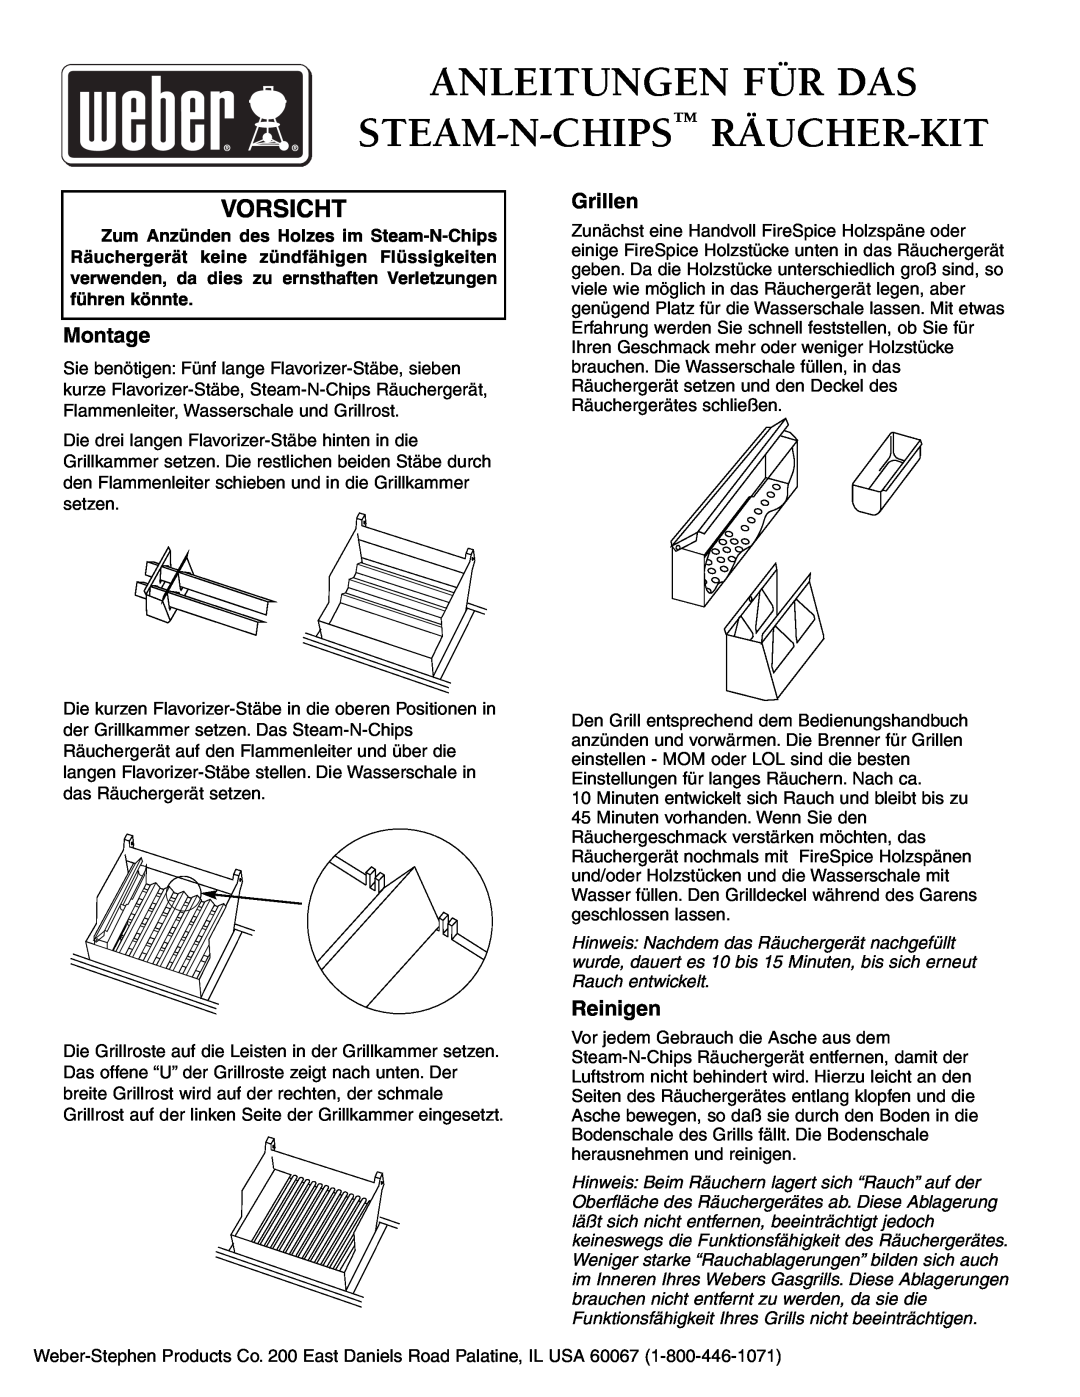 Weber Smoker owner manual Anleitungen Für Das Steam-N-Chips Räucher-Kit, Vorsicht, Montage, Grillen, Reinigen 